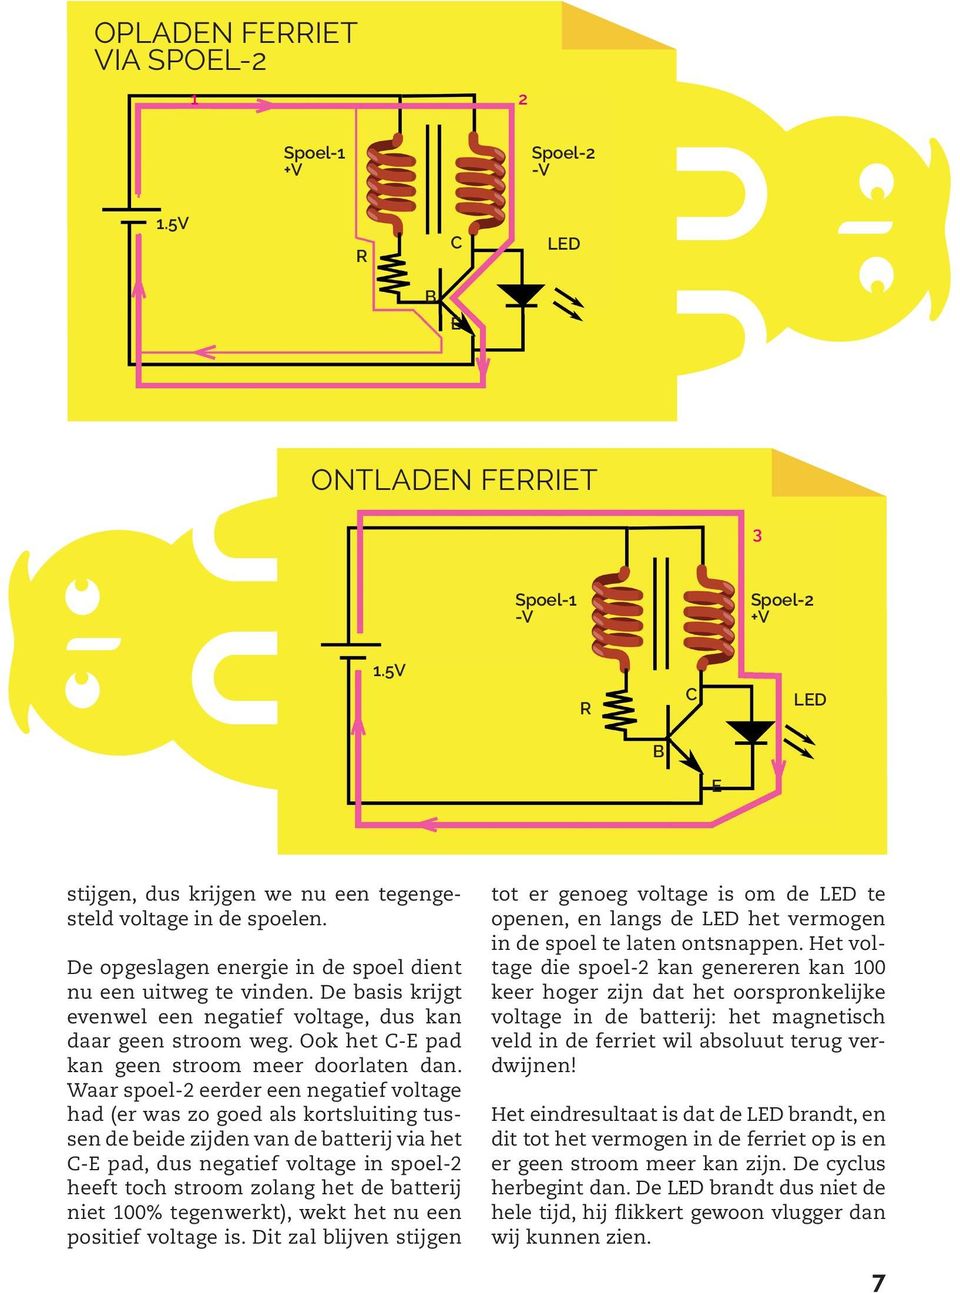 Waar spoel-2 eerder een negatief voltage had (er was zo goed als kortsluiting tussen de beide zijden van de batterij via het C-E pad, dus negatief voltage in spoel-2 heeft toch stroom zolang het de